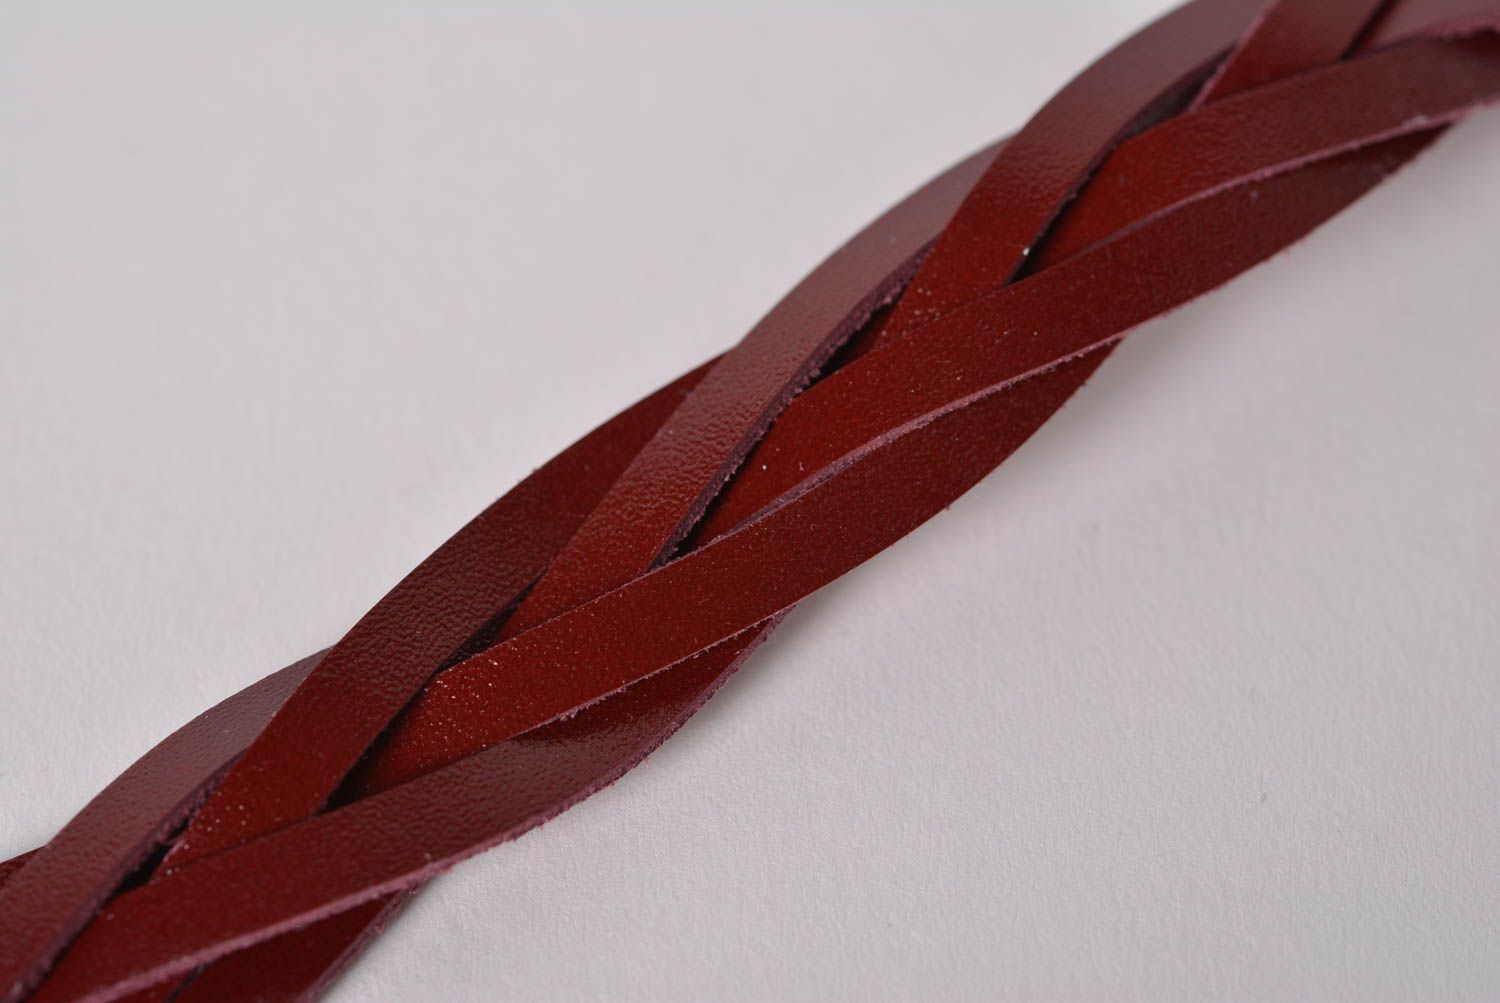 Stylish handmade leather bracelet wrist bracelet leather goods handmade gifts photo 5